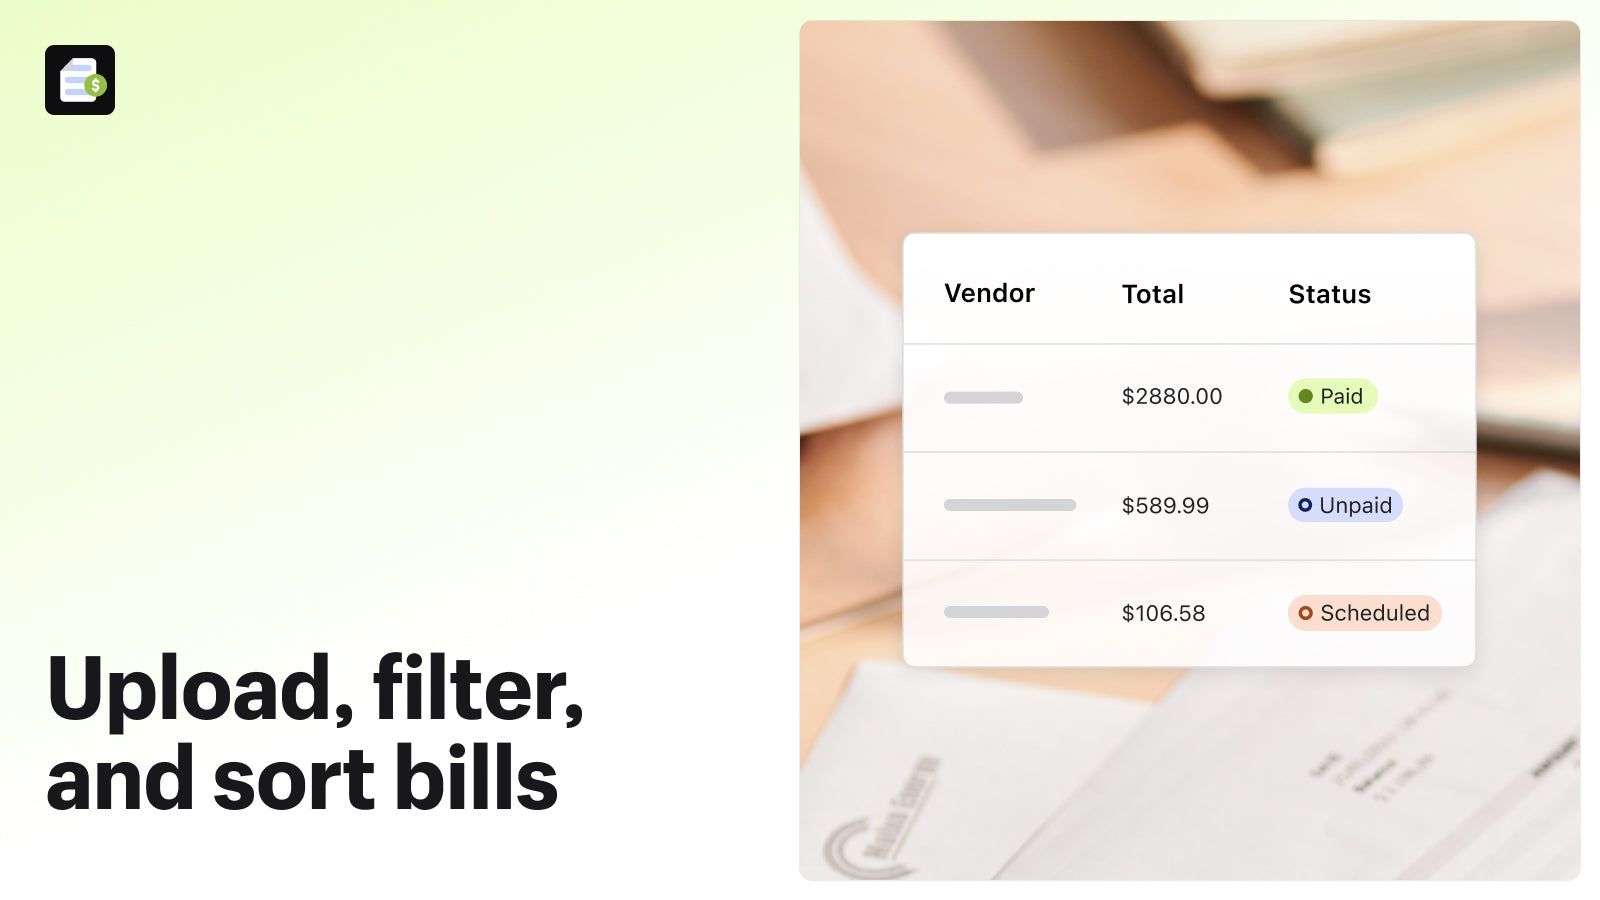 Upload, filter, and sort bills